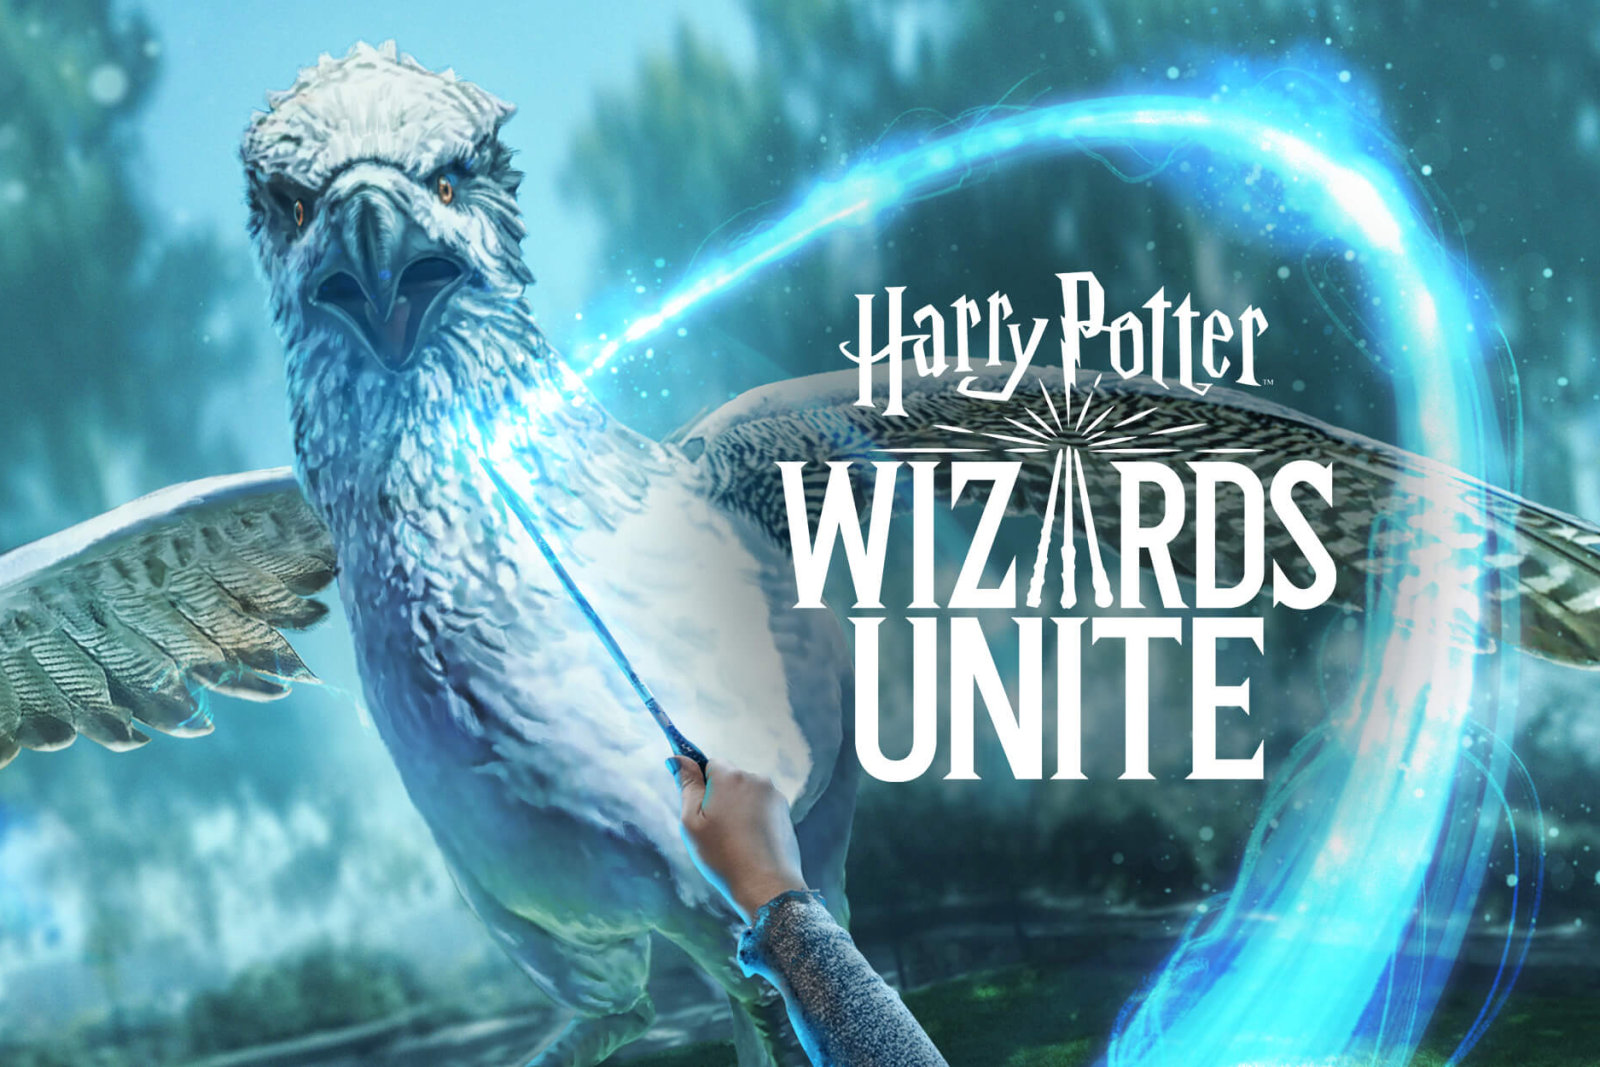 Harry Potter: Wizards Unite è in arrivo su iOS, pronti a proteggere i babbani?